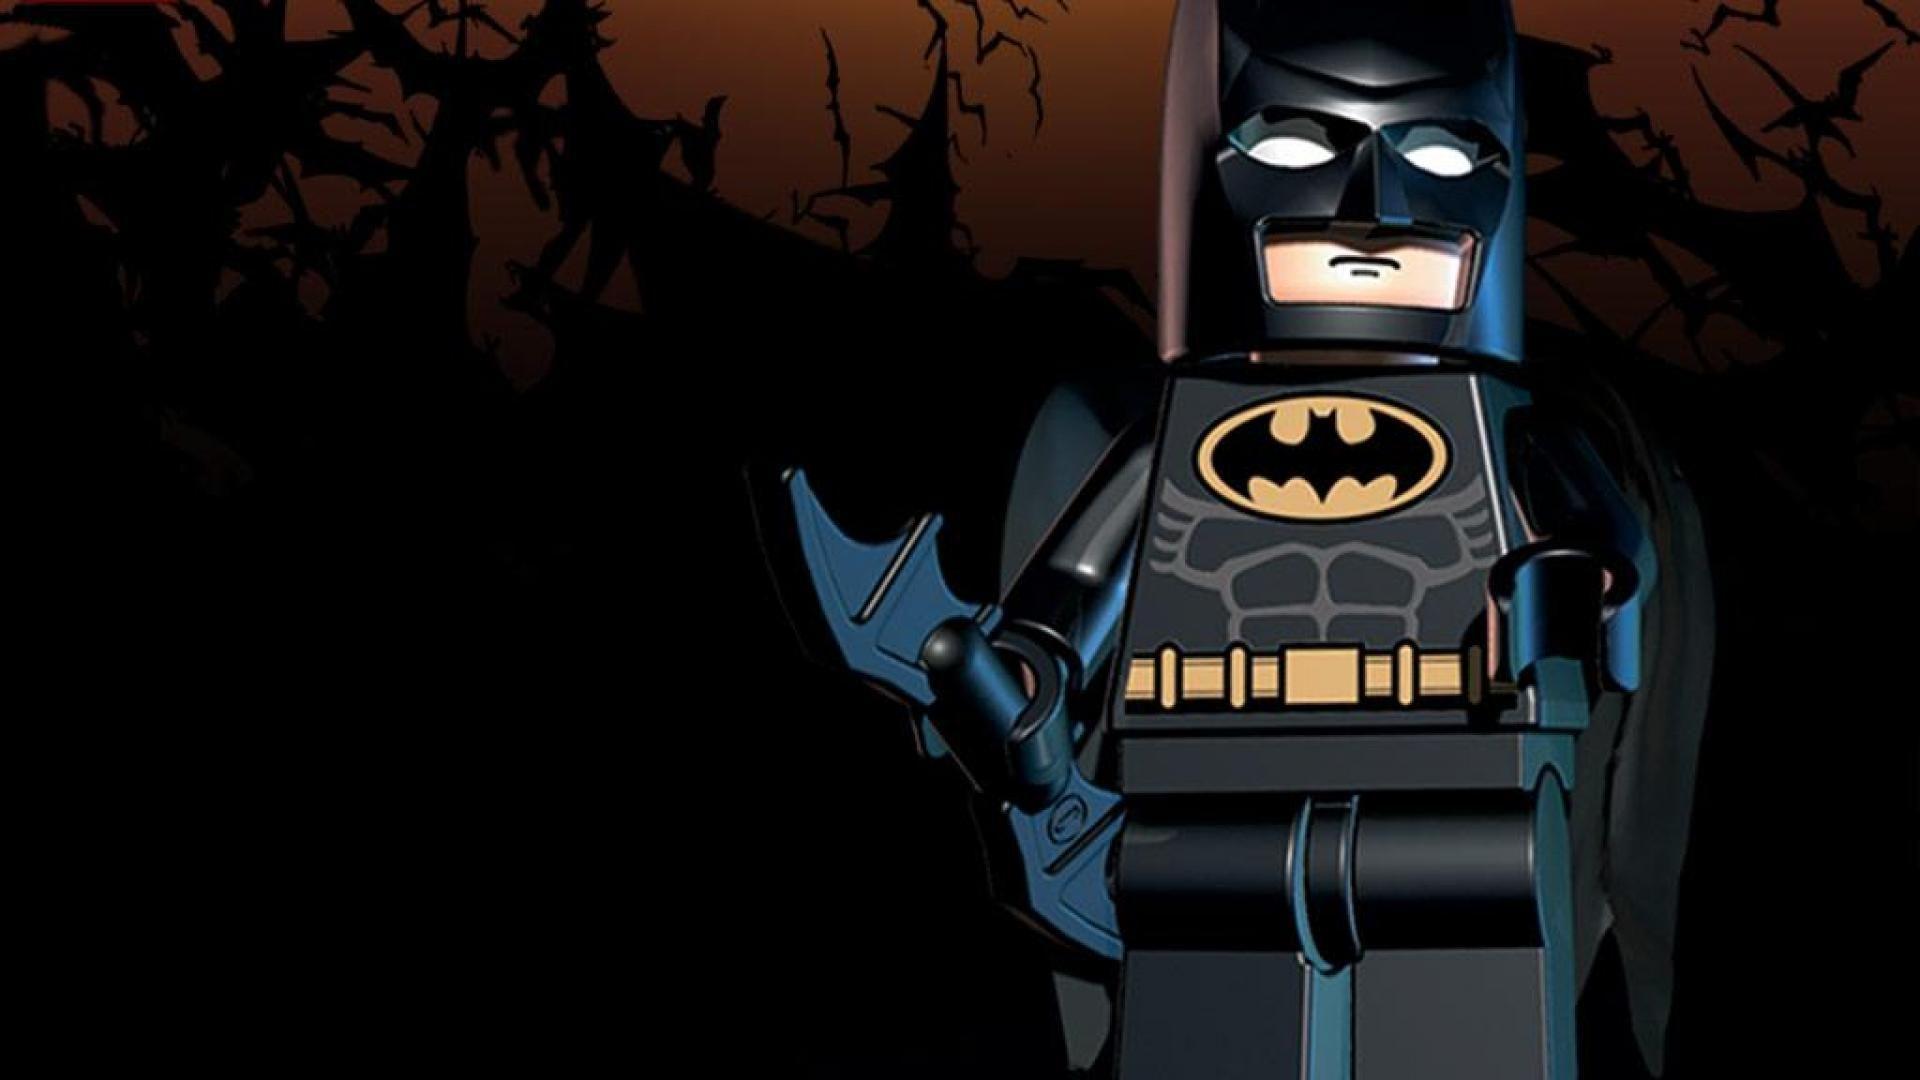 Lego batman beyond gotham Video game HD Wallpaper, Desktop